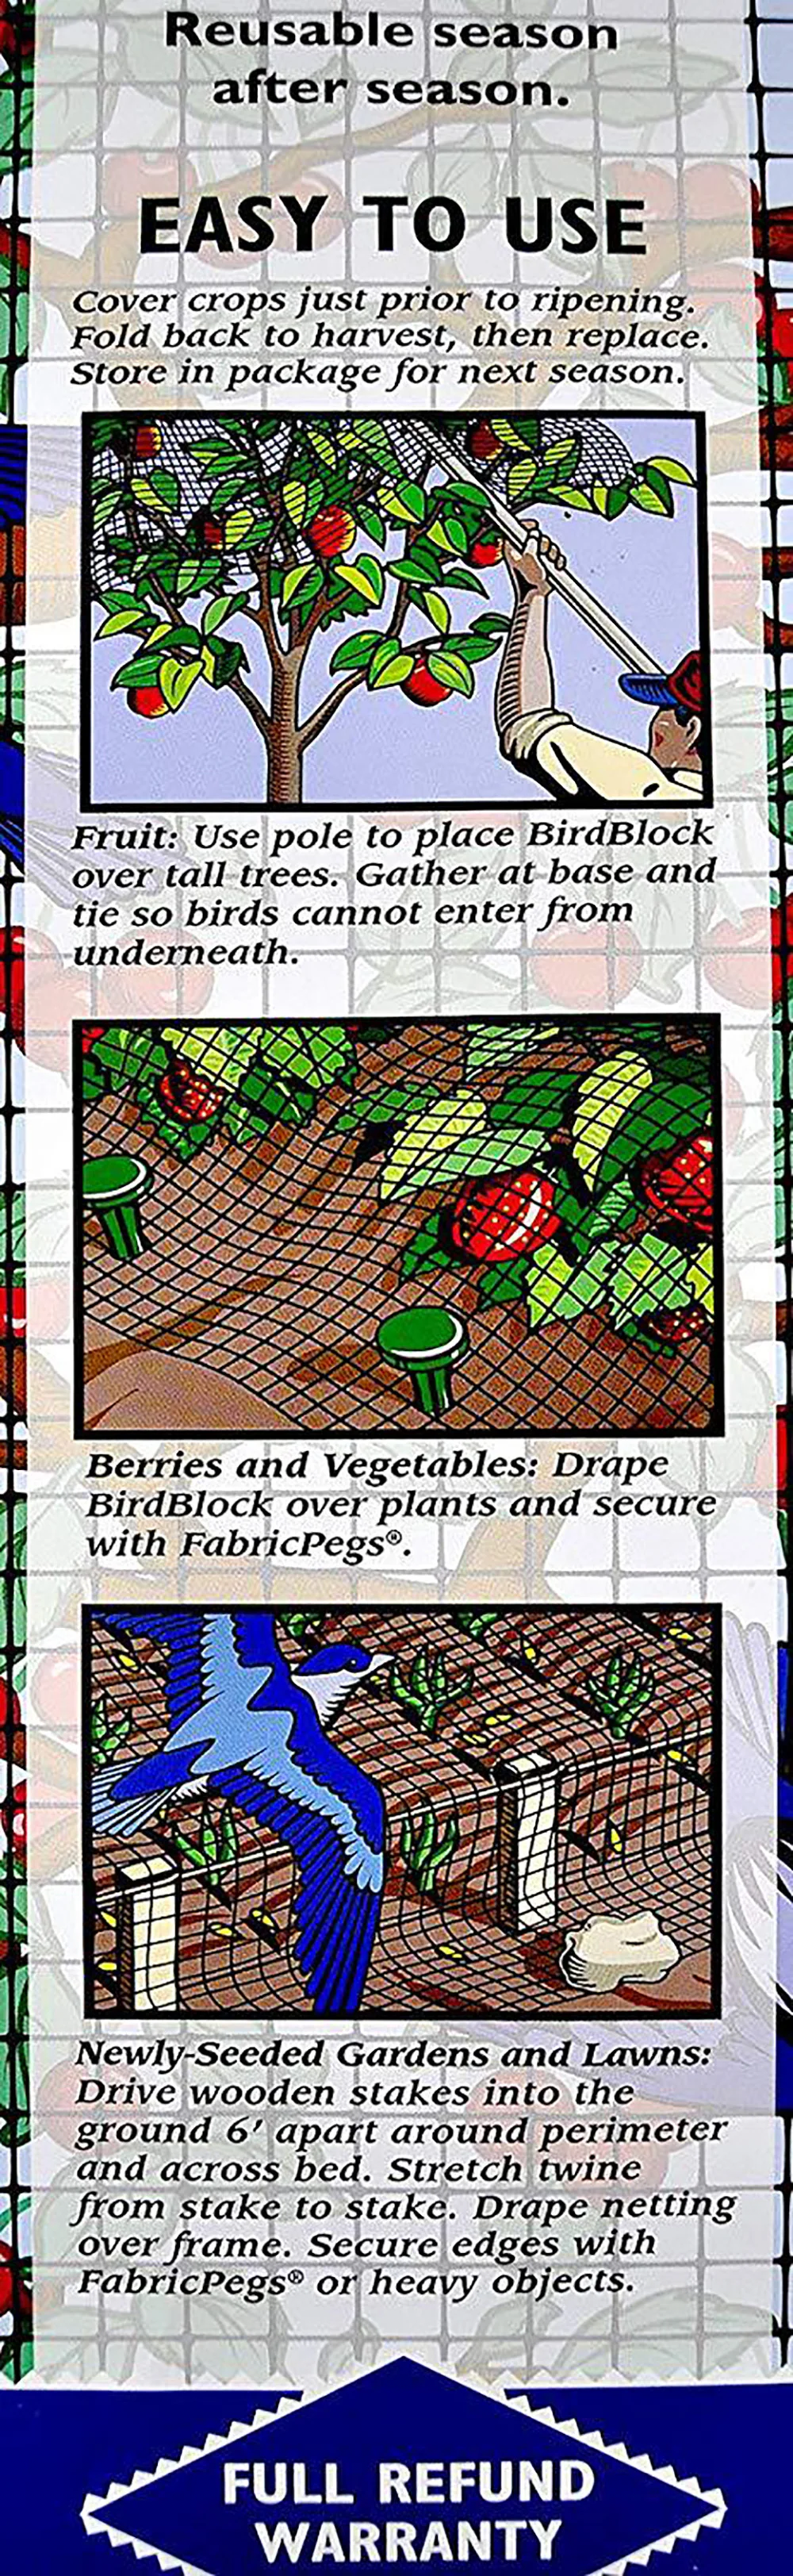 2 шт. садовая сетка для борьбы с вредителями птичья сетка против птиц с 20/50 галстуками фруктовое Дерево Защита овощей садовая сетка защита